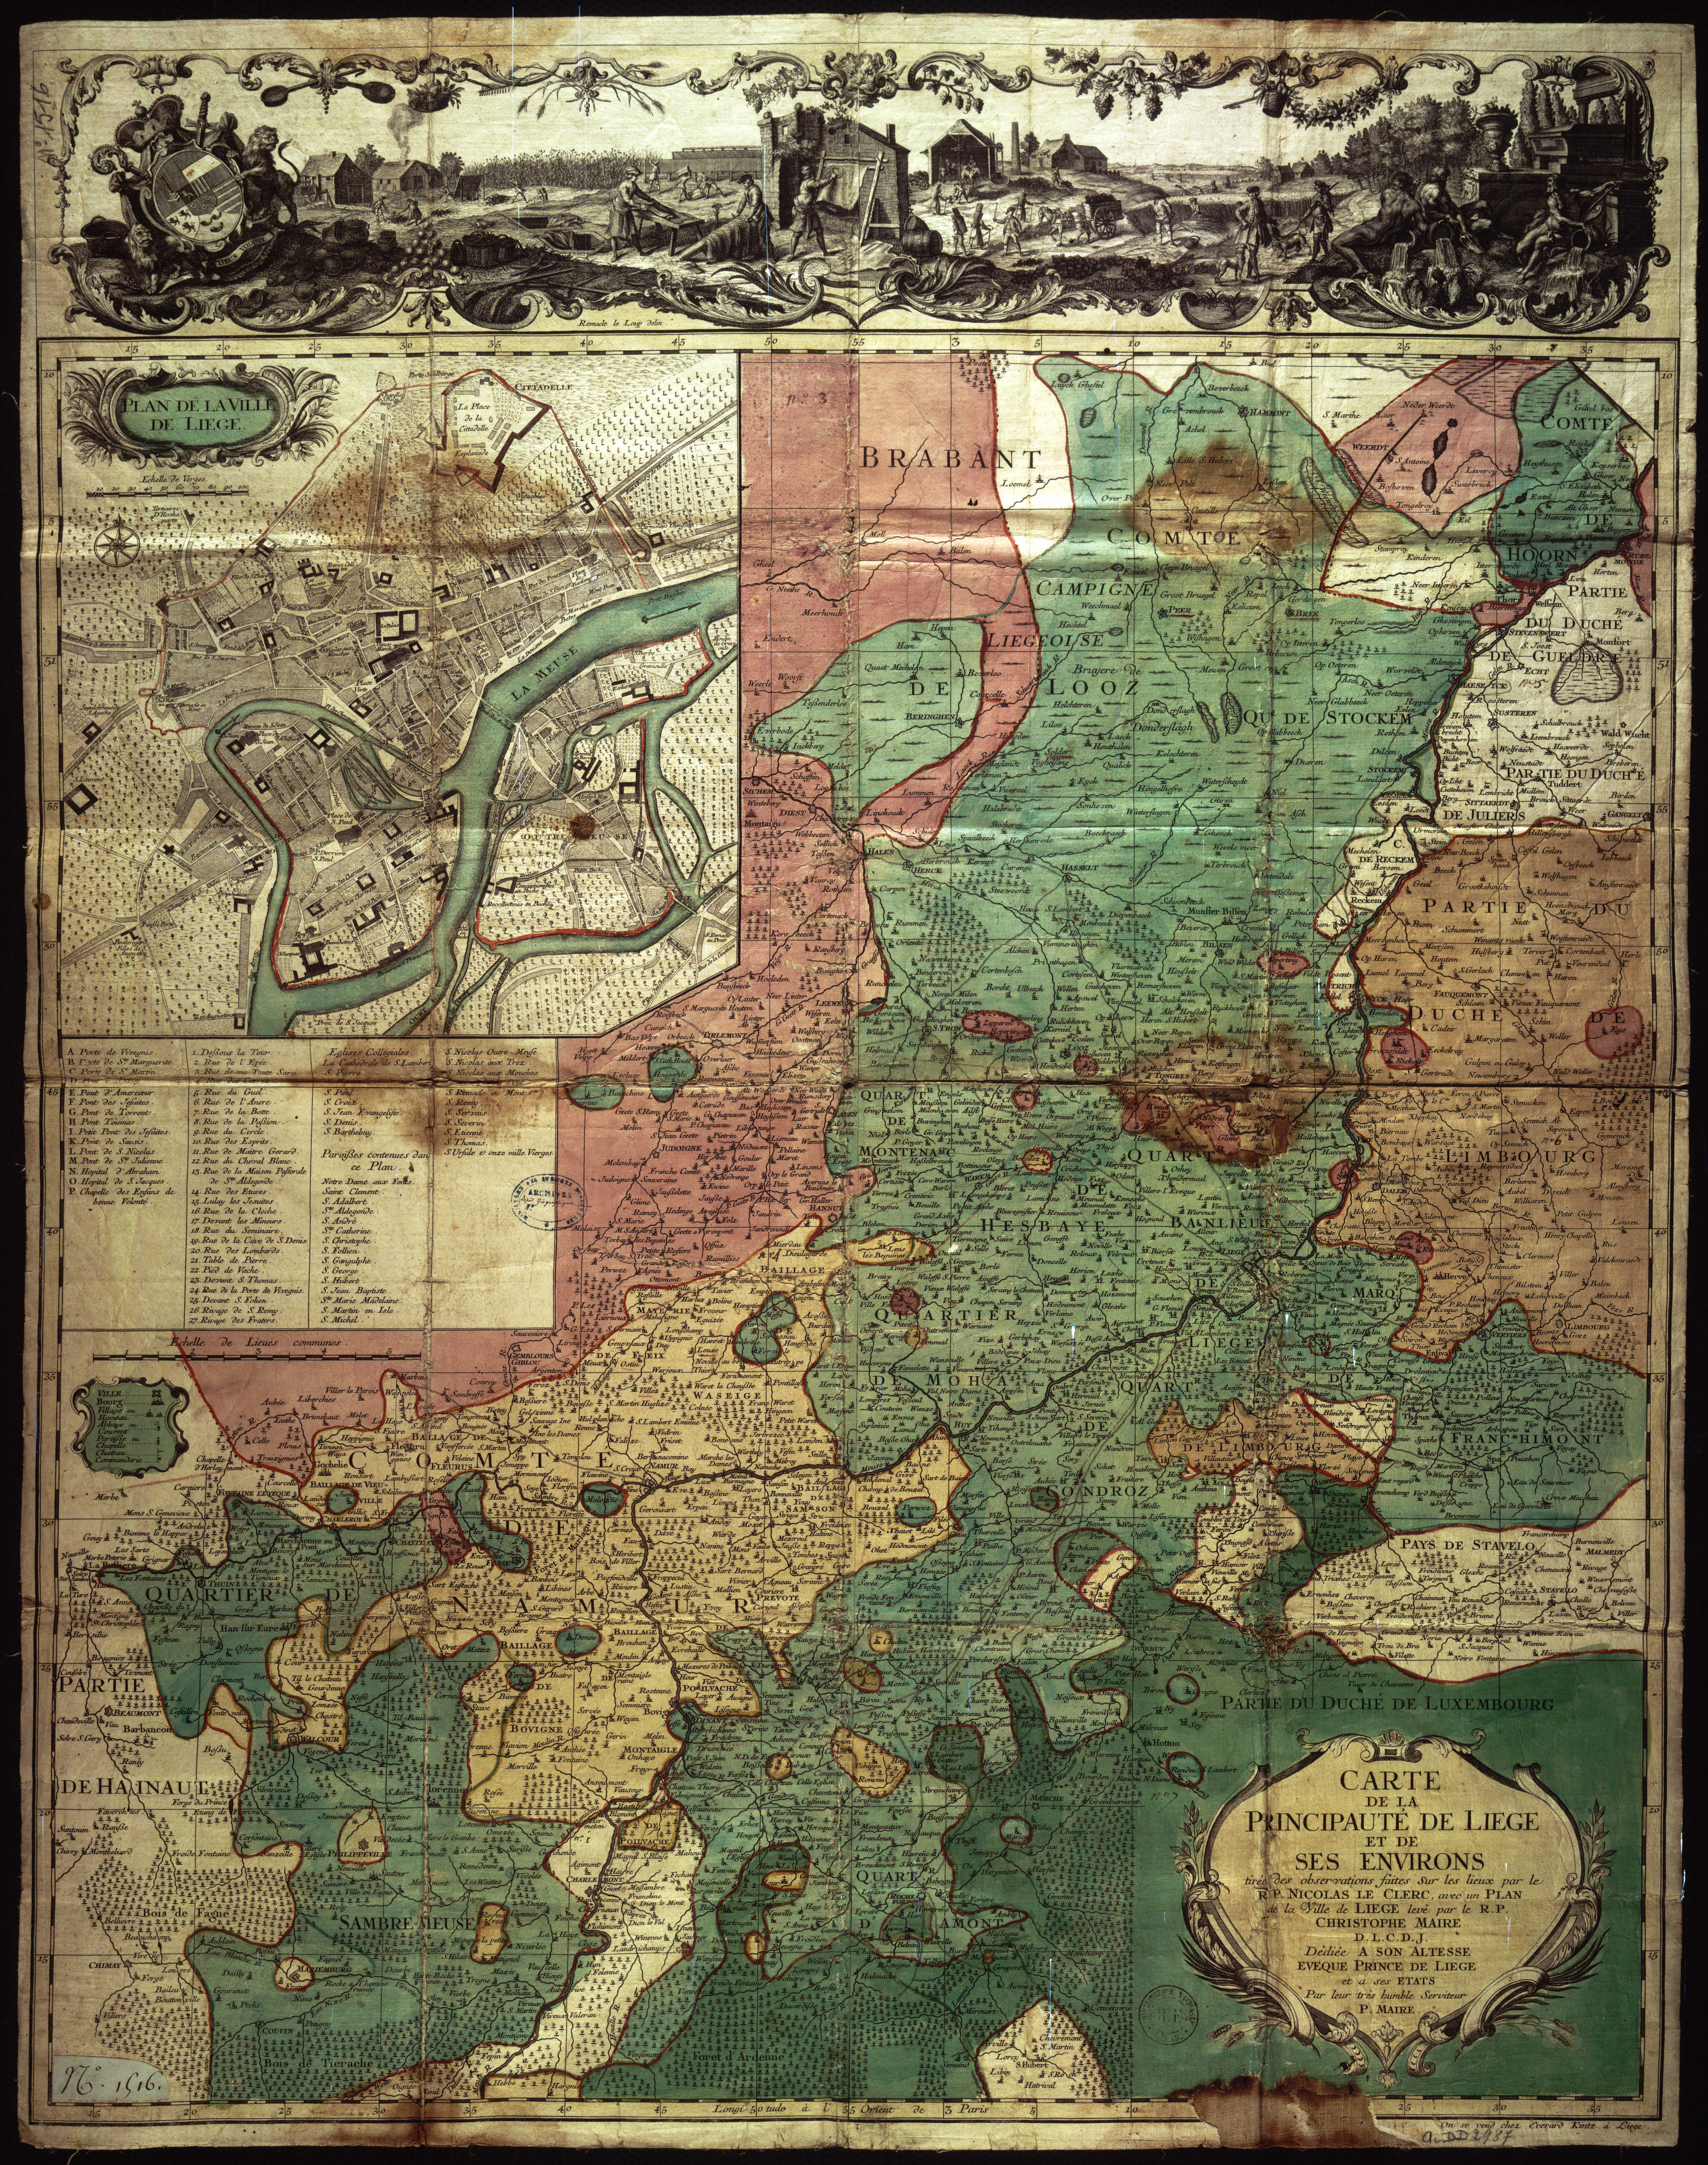 Carte de la principauté de Liège et de ses environs tirée des observations  faites sur les lieux par le R.P. Nicolas Le Clerc, avec un plan de la ville  de Liège levé